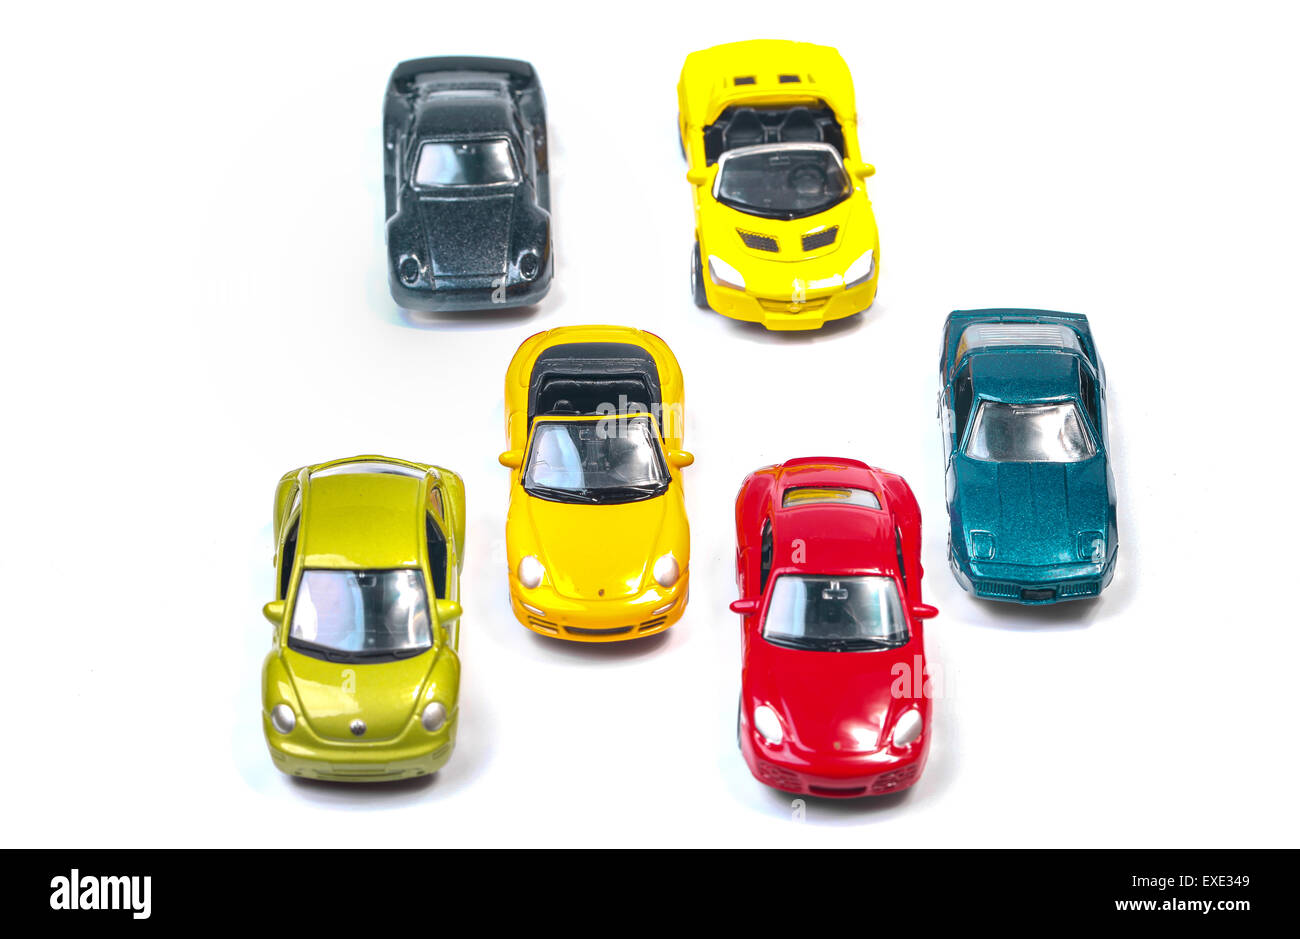 High angle view sur voitures jouets colorés Banque D'Images